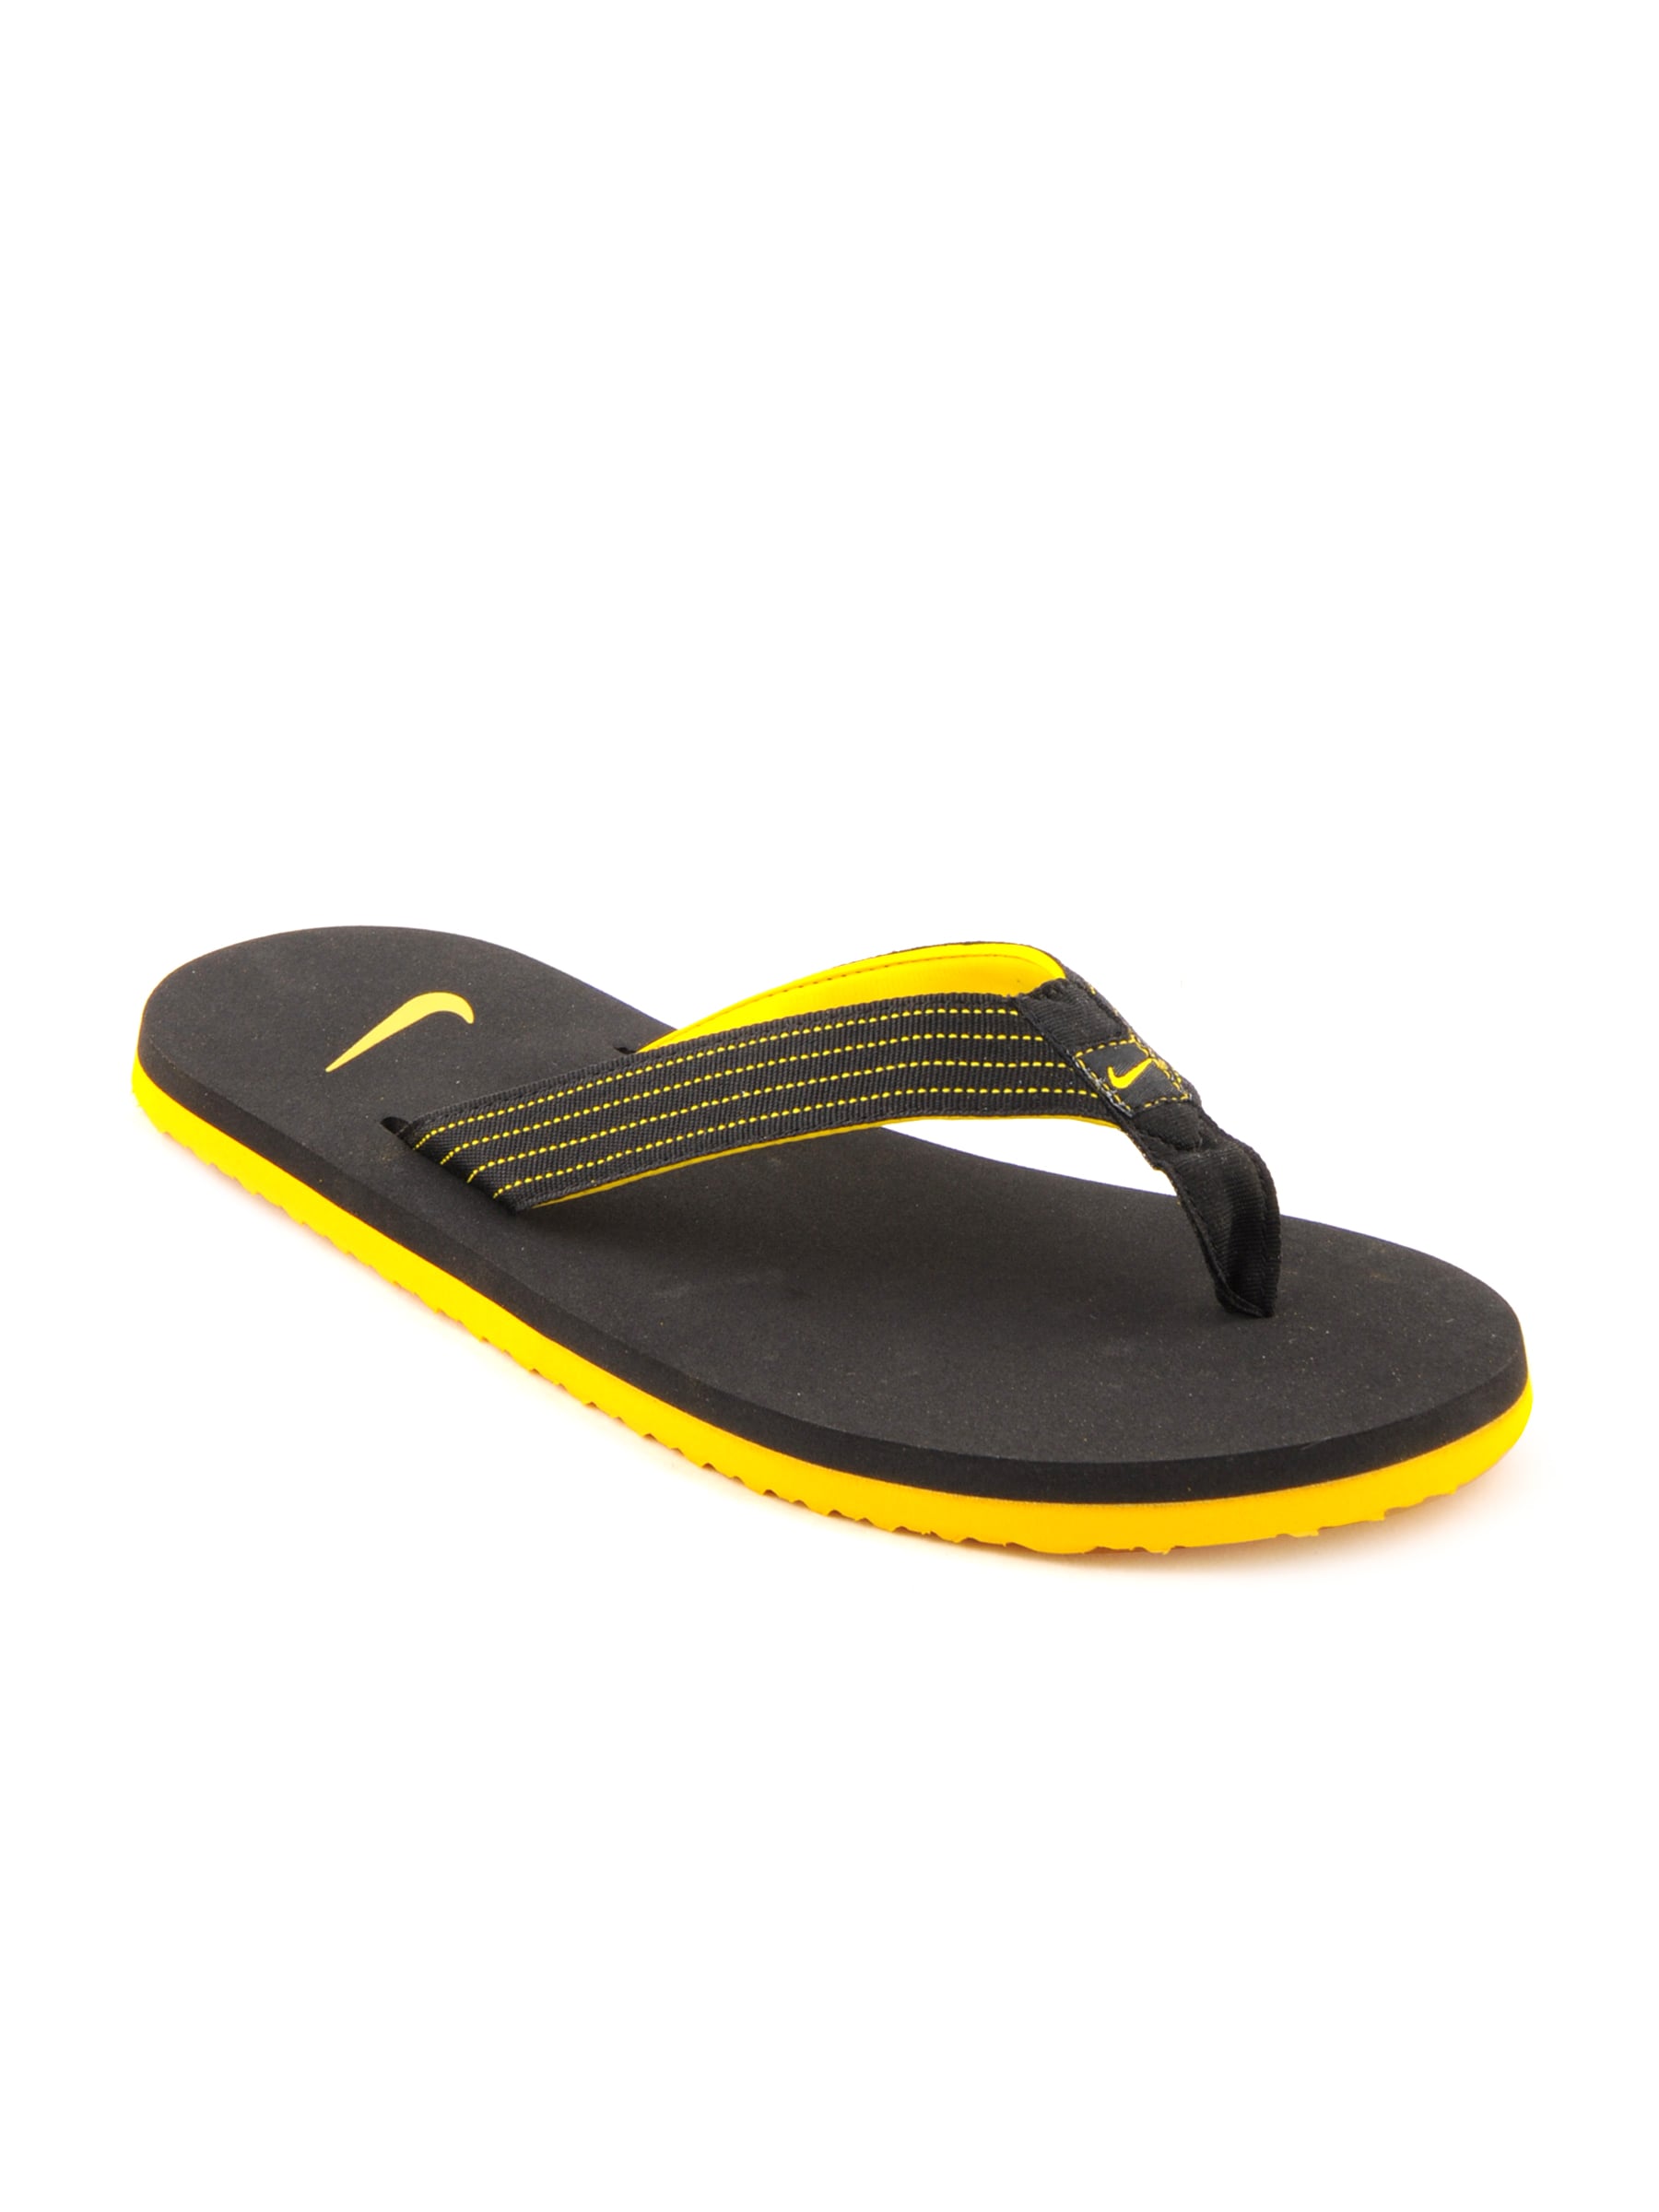 Nike Men's Splash Thong Yellow Black Flip Flop